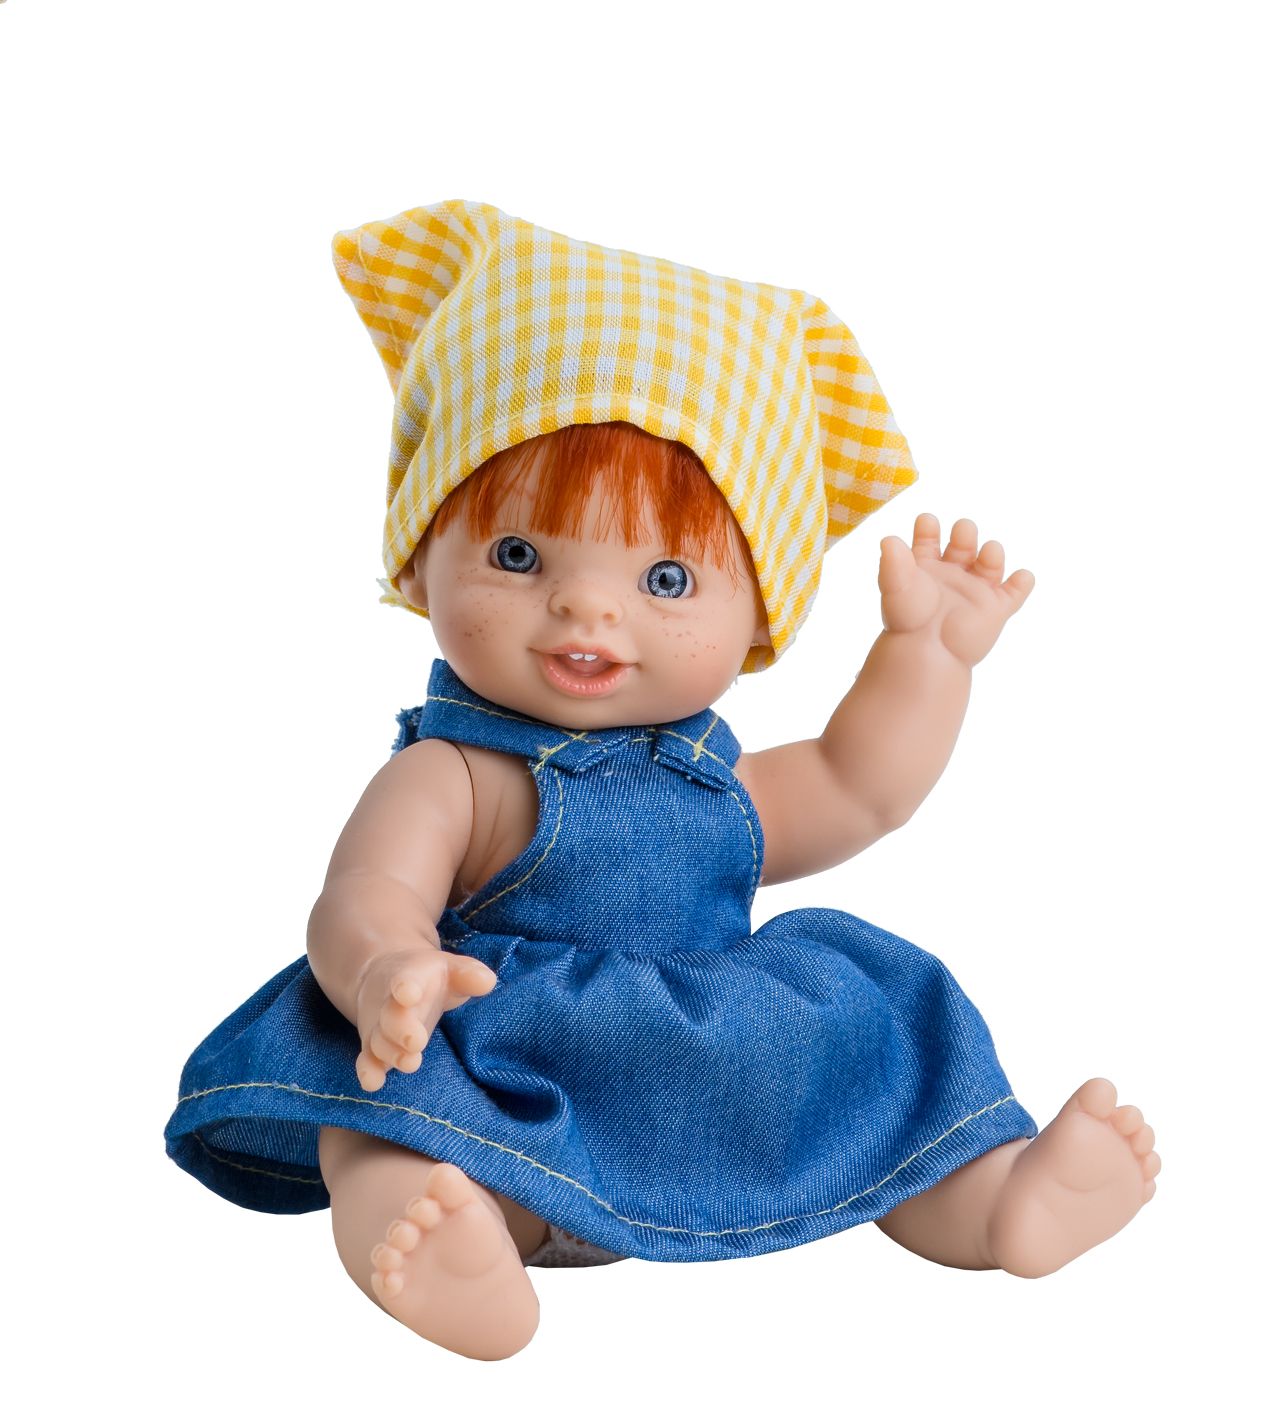 Realistická panenka Paolita Helena od firmy Paola Reina ze Španělska - obrázek 1